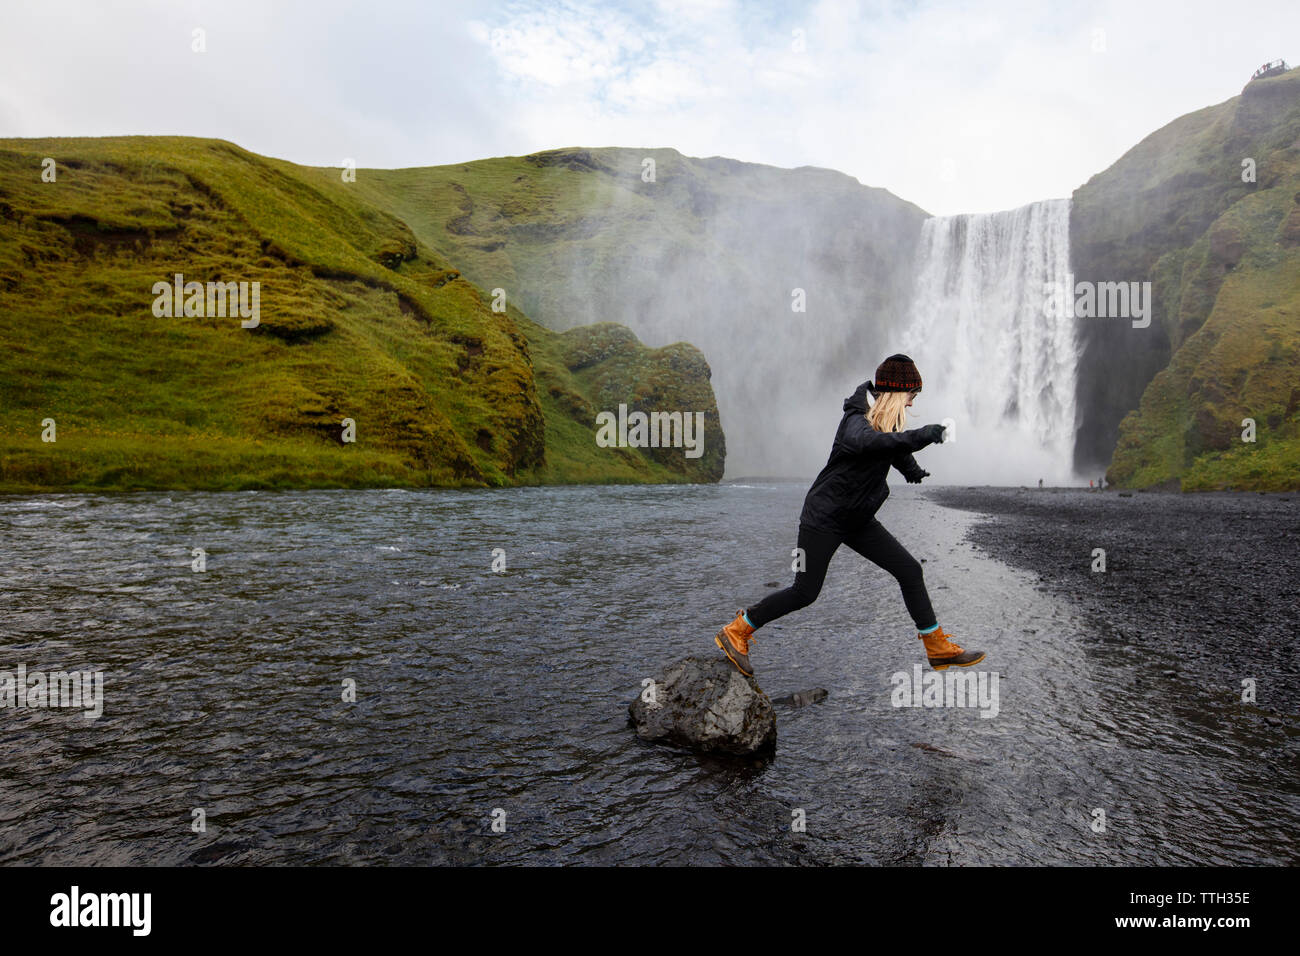 A millenial woman jumps from a rock near Skogafoss, Iceland. Stock Photo